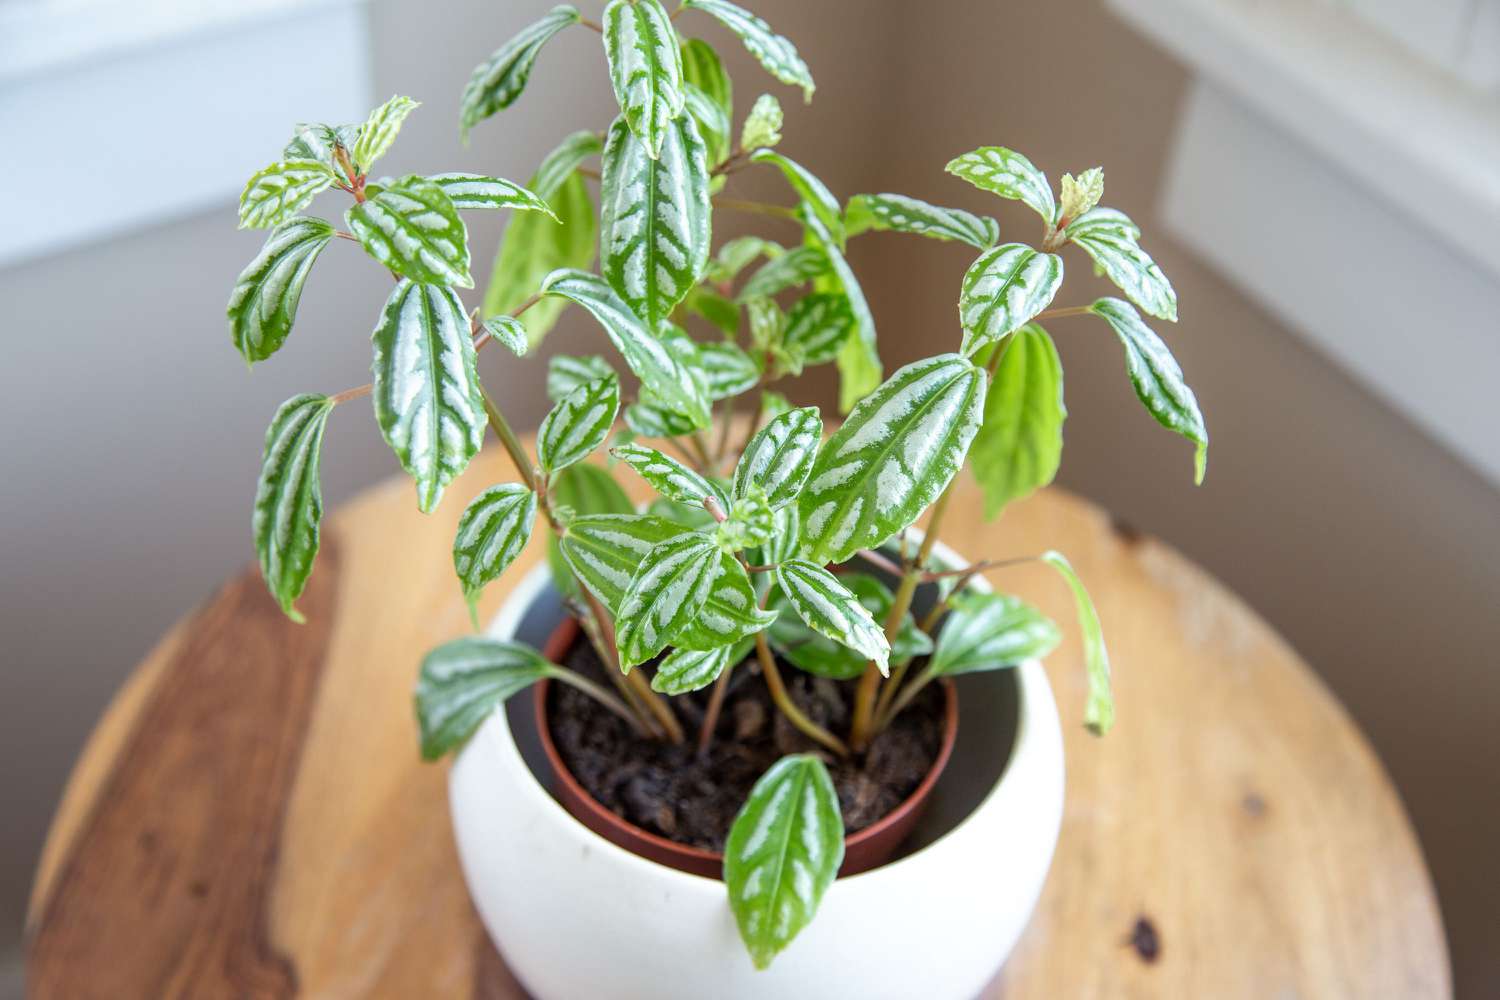 Planta de aluminio en maceta blanca con hojas abigarradas plateadas y verdes